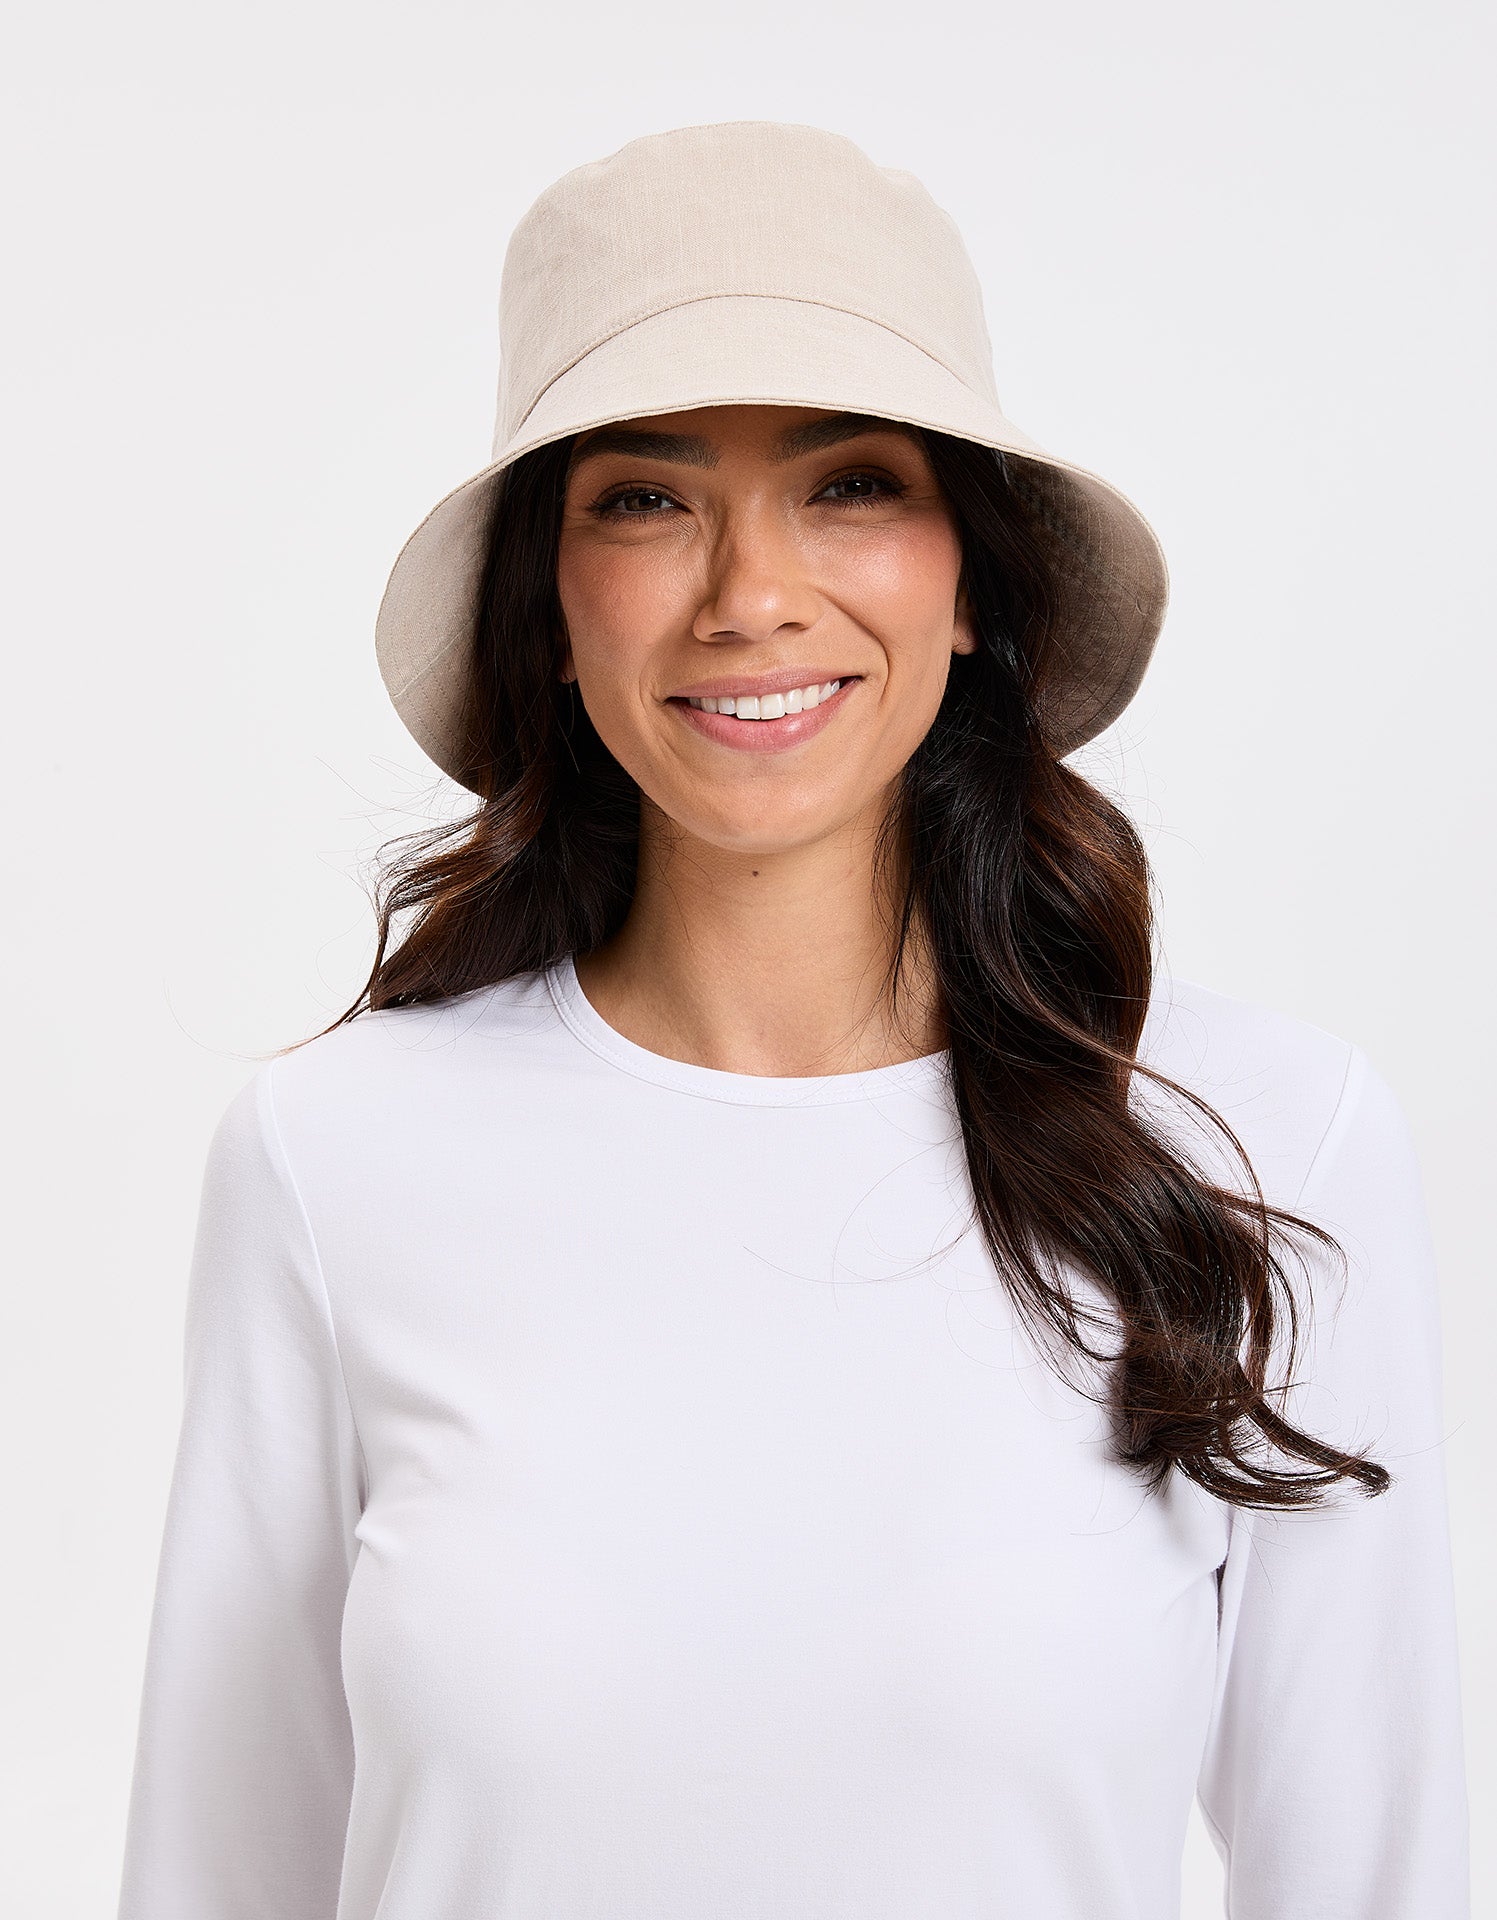 Womens Holiday Sun Hat, Sun Protective Wide Brim Sun Hat For Women –  Solbari UK